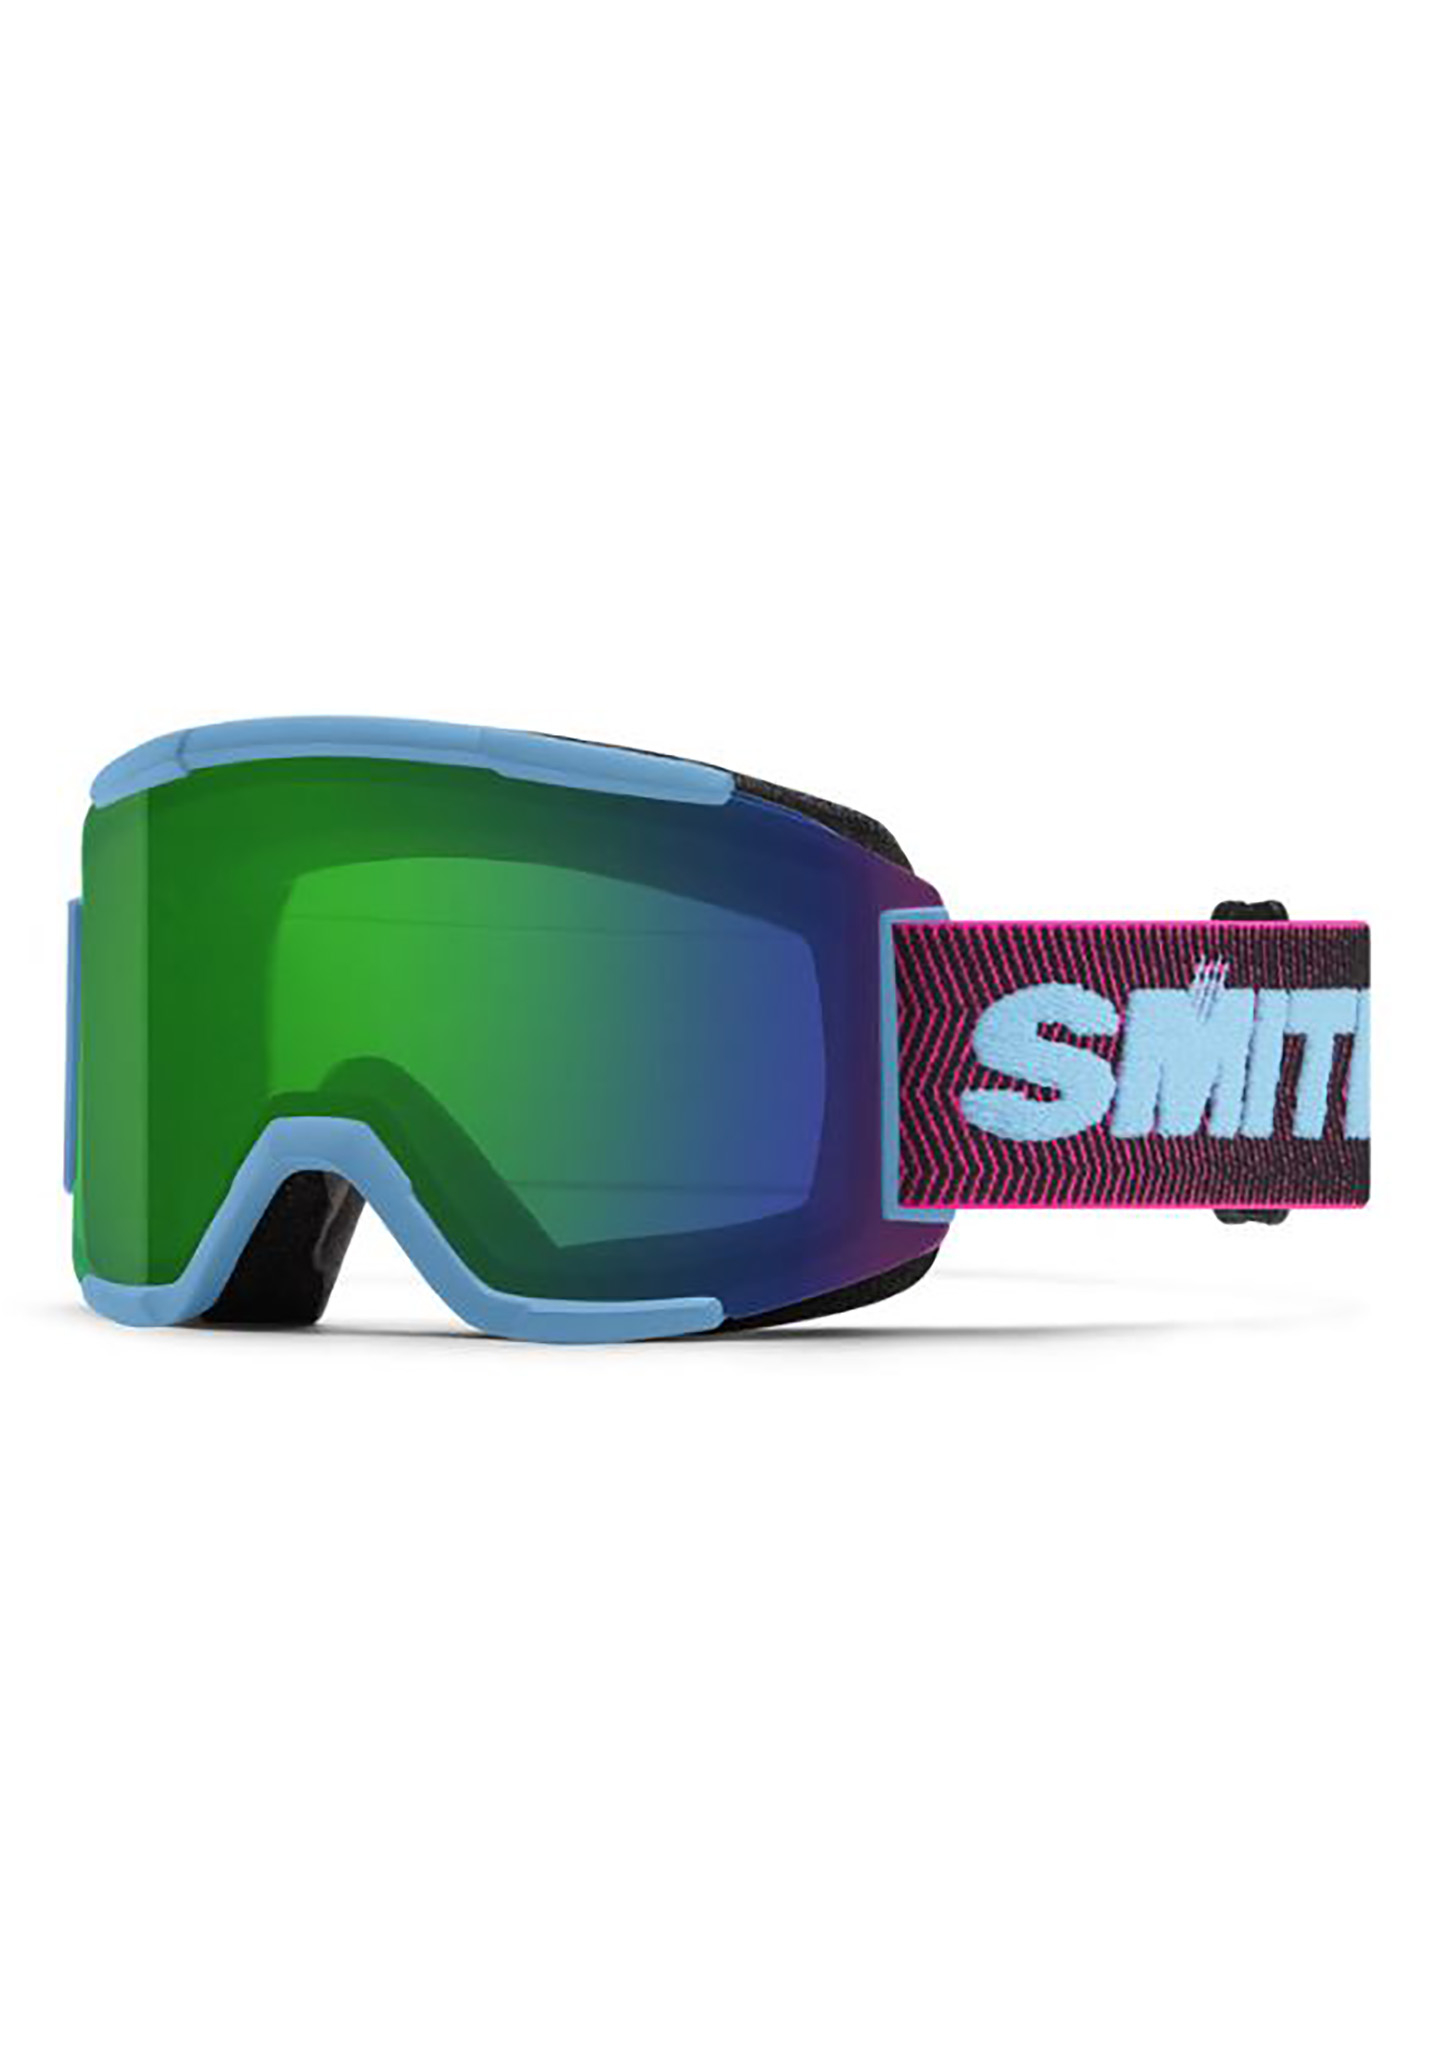 Smith Squad Snowboardbrillen schnorchel-archiv/alltäglicher grüner spiegel One Size